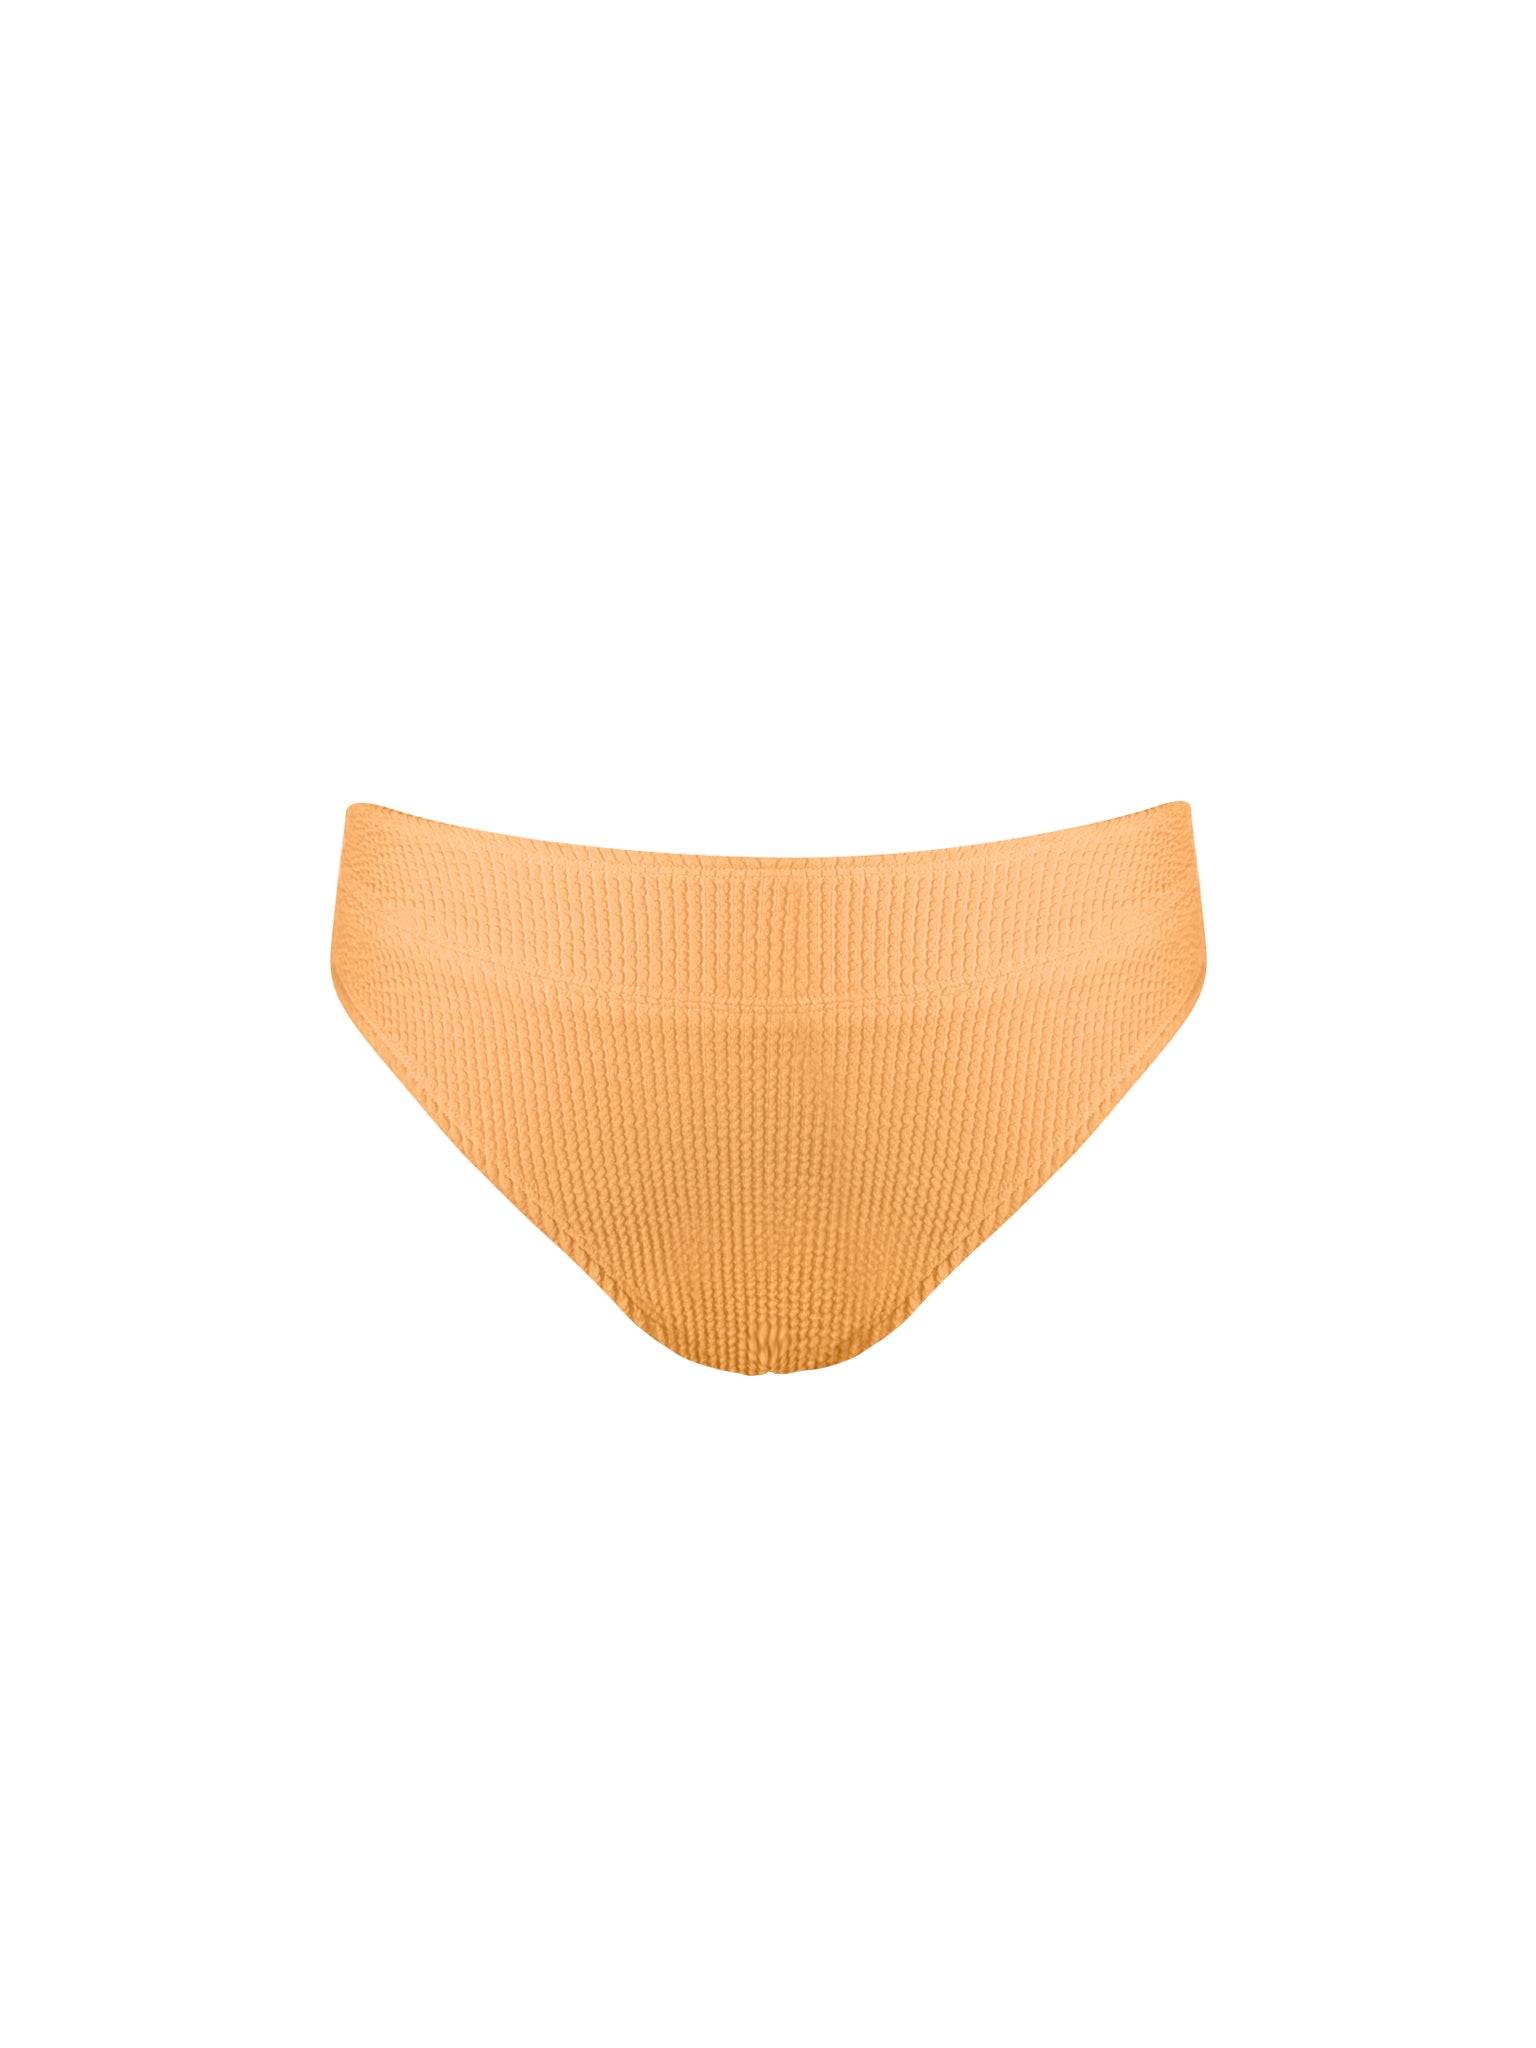 High Waisted Bikini Bottom - Fire Orange